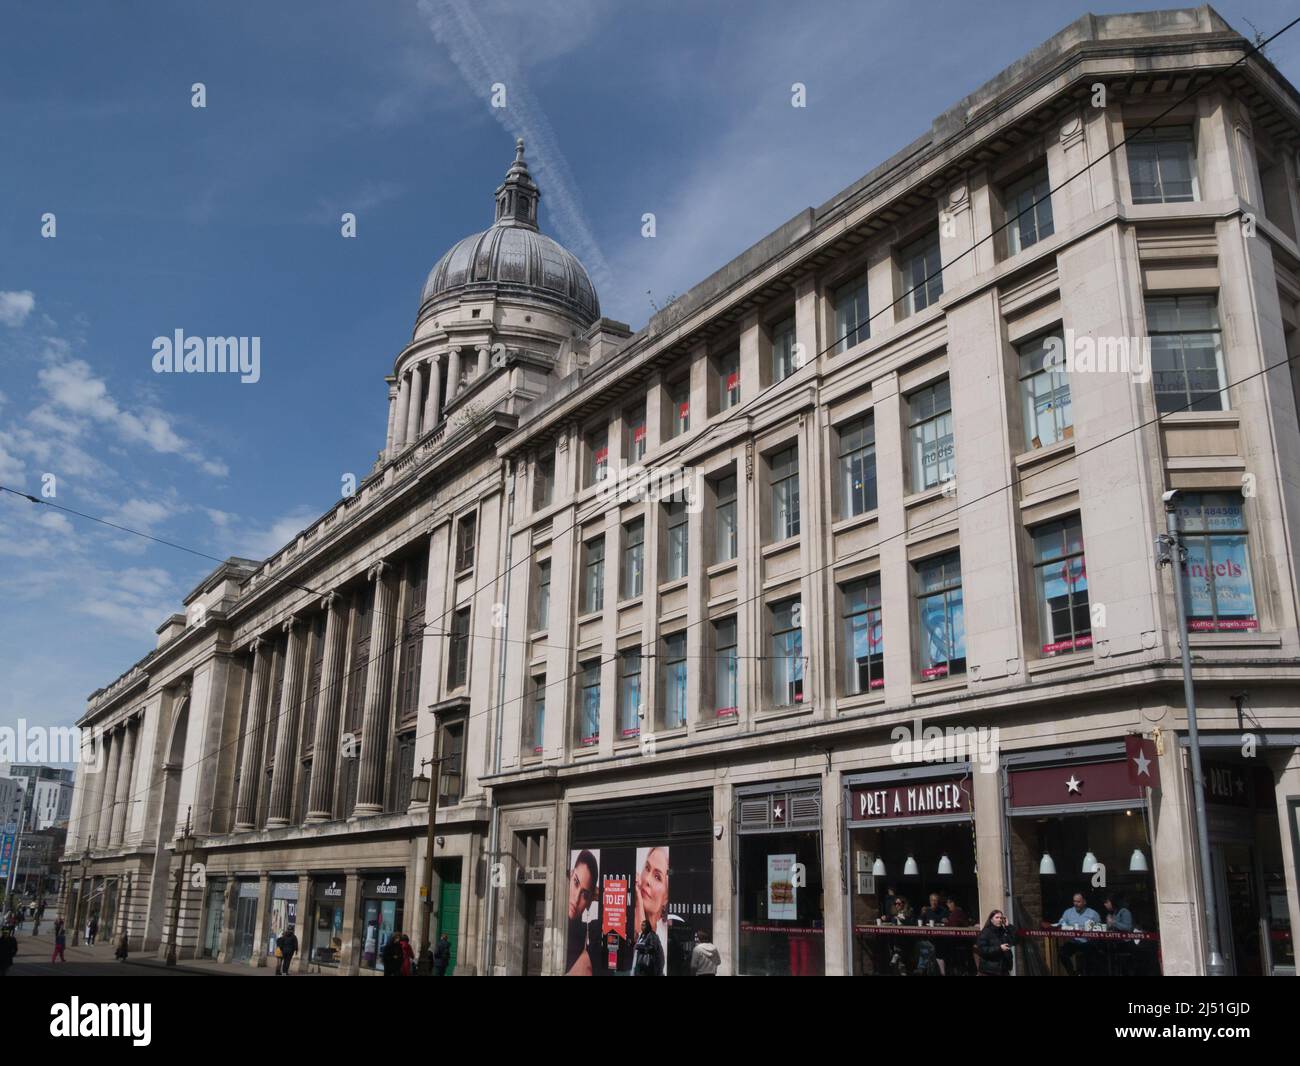 Blick auf Cheapside zum Old Market Square Nottingham England, Großbritannien, mit einer Kuppel des Council House, die vor blauem Himmel silhouettiert ist Stockfoto